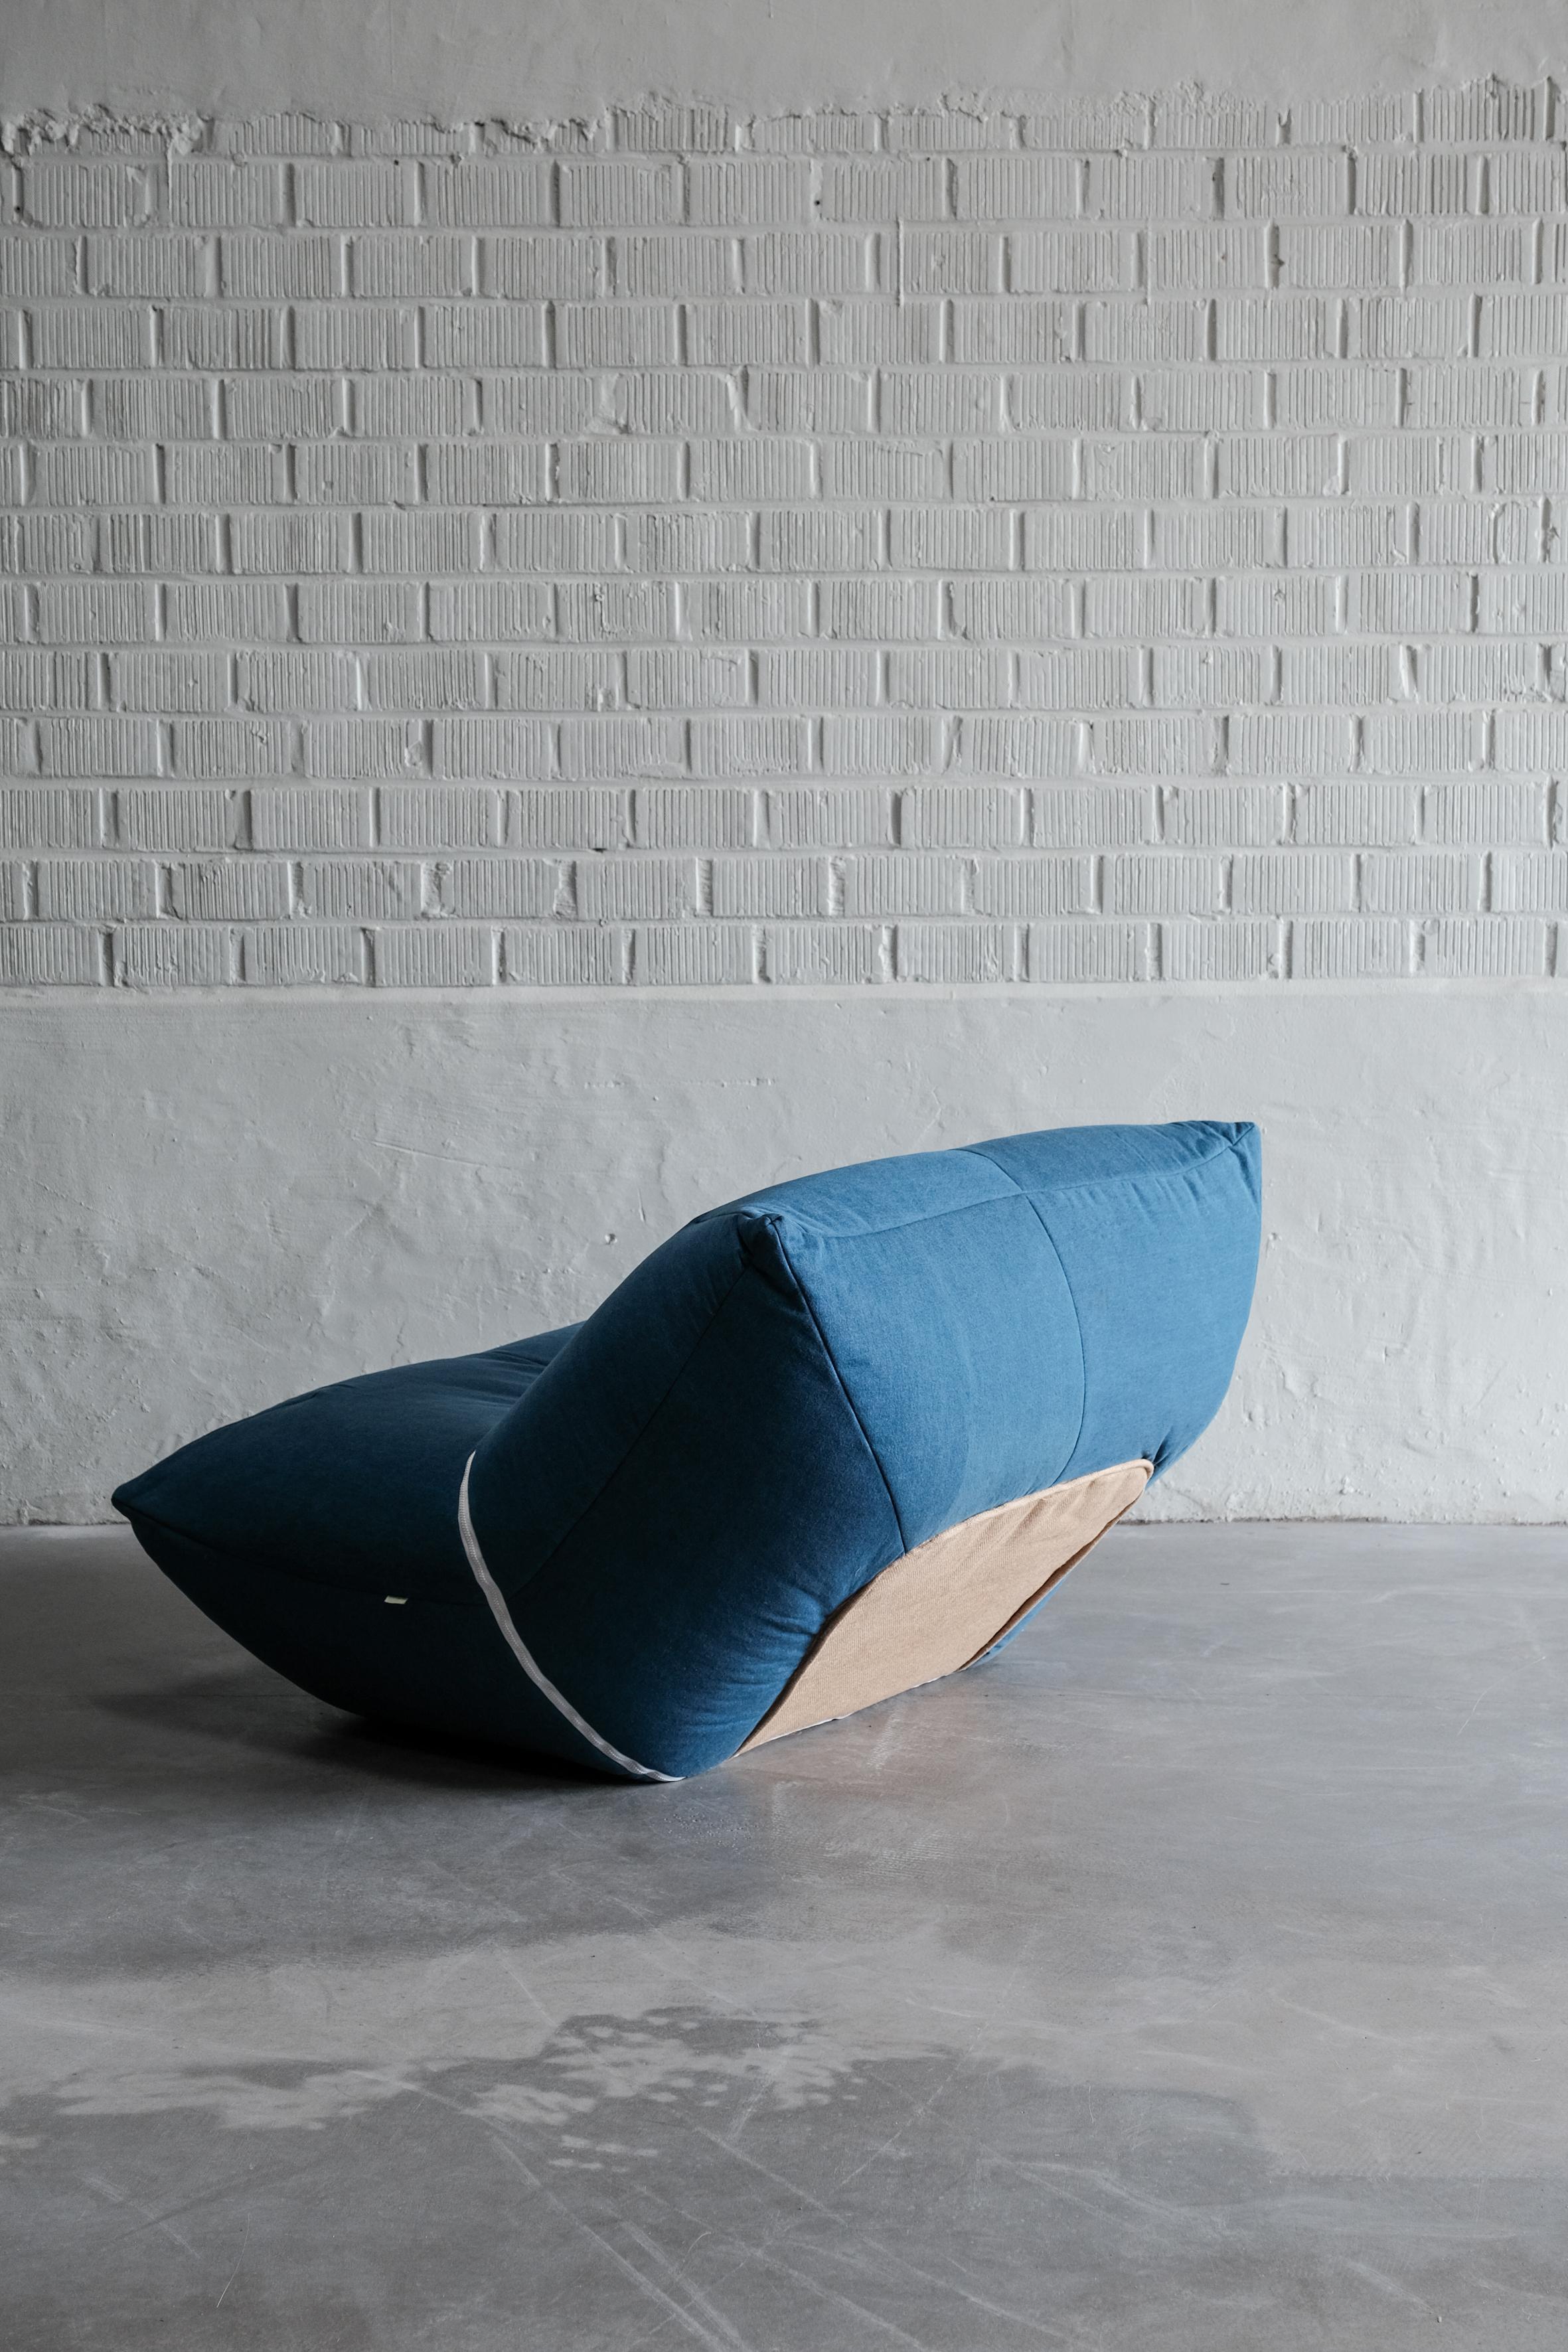  Wir stellen den Papillon Sessel vor: Entworfen von Guido Rosati für Giovannetti, hergestellt in Italien.

Der Loungesessel Papillon, ein Meisterwerk, das von Guido Rosati für Giovannetti entworfen und in Italien hergestellt wurde.

Mit einem